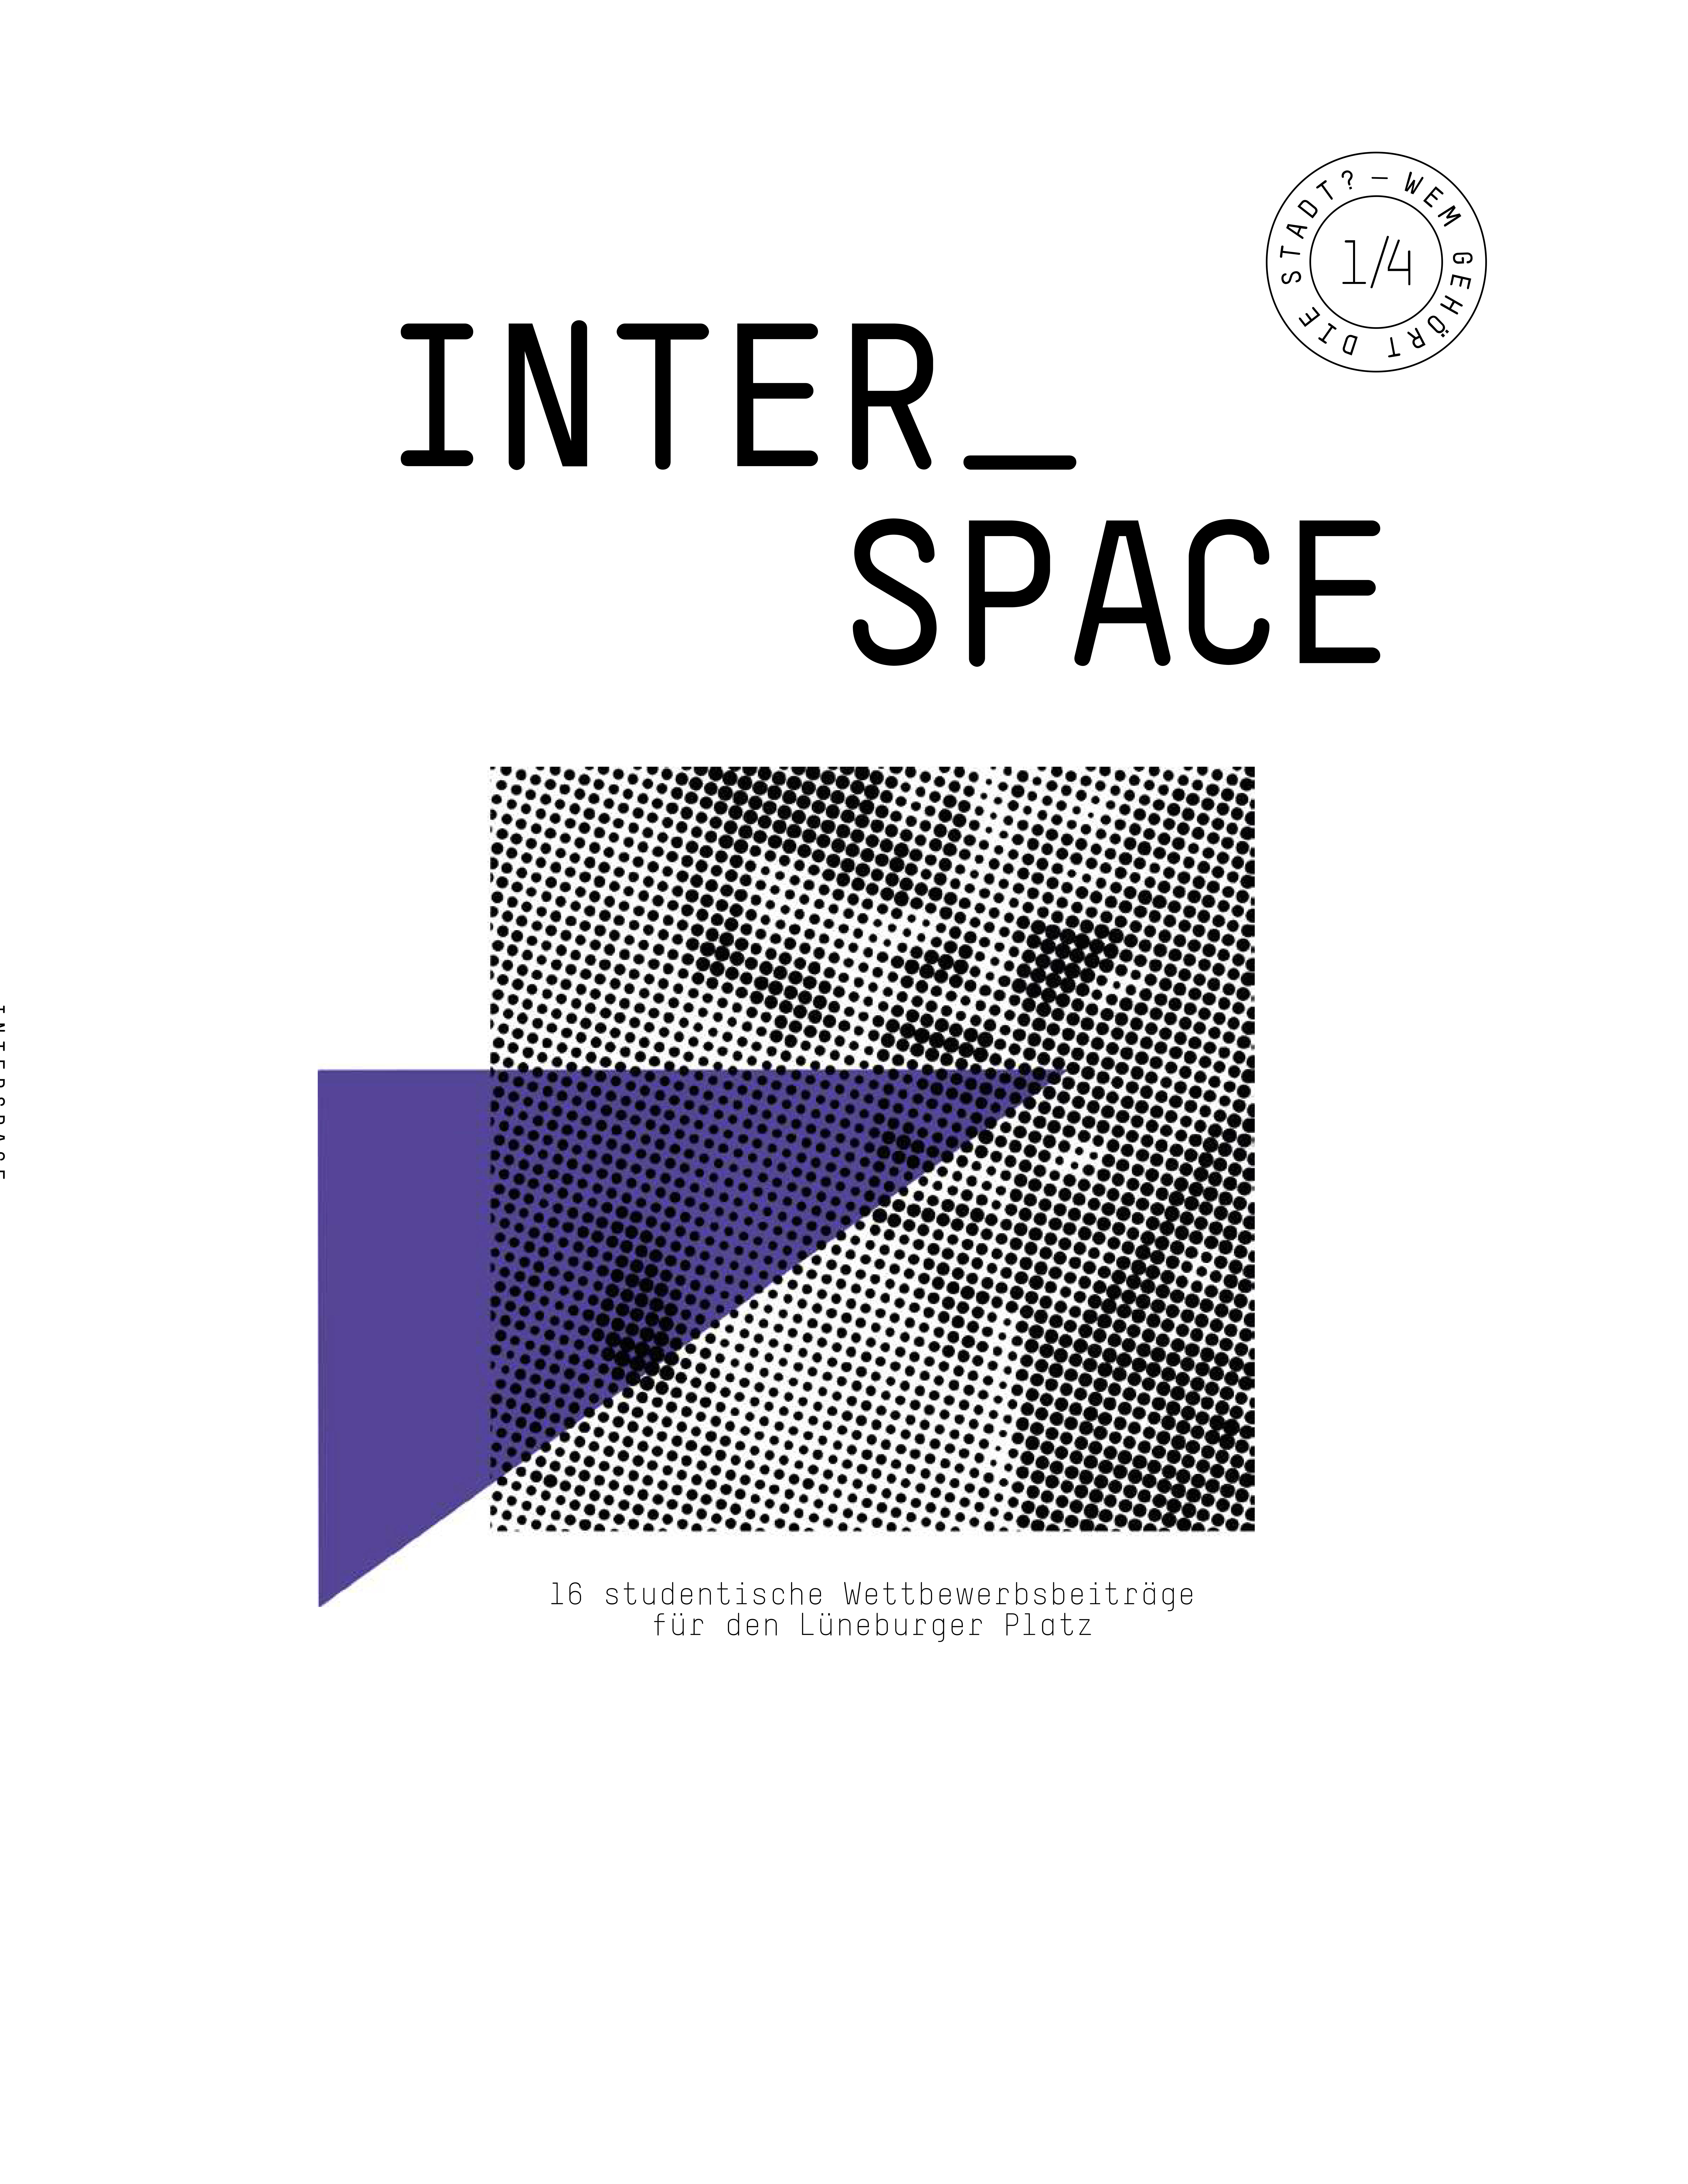 Interspace 2013 - Wem gehört die Stadt